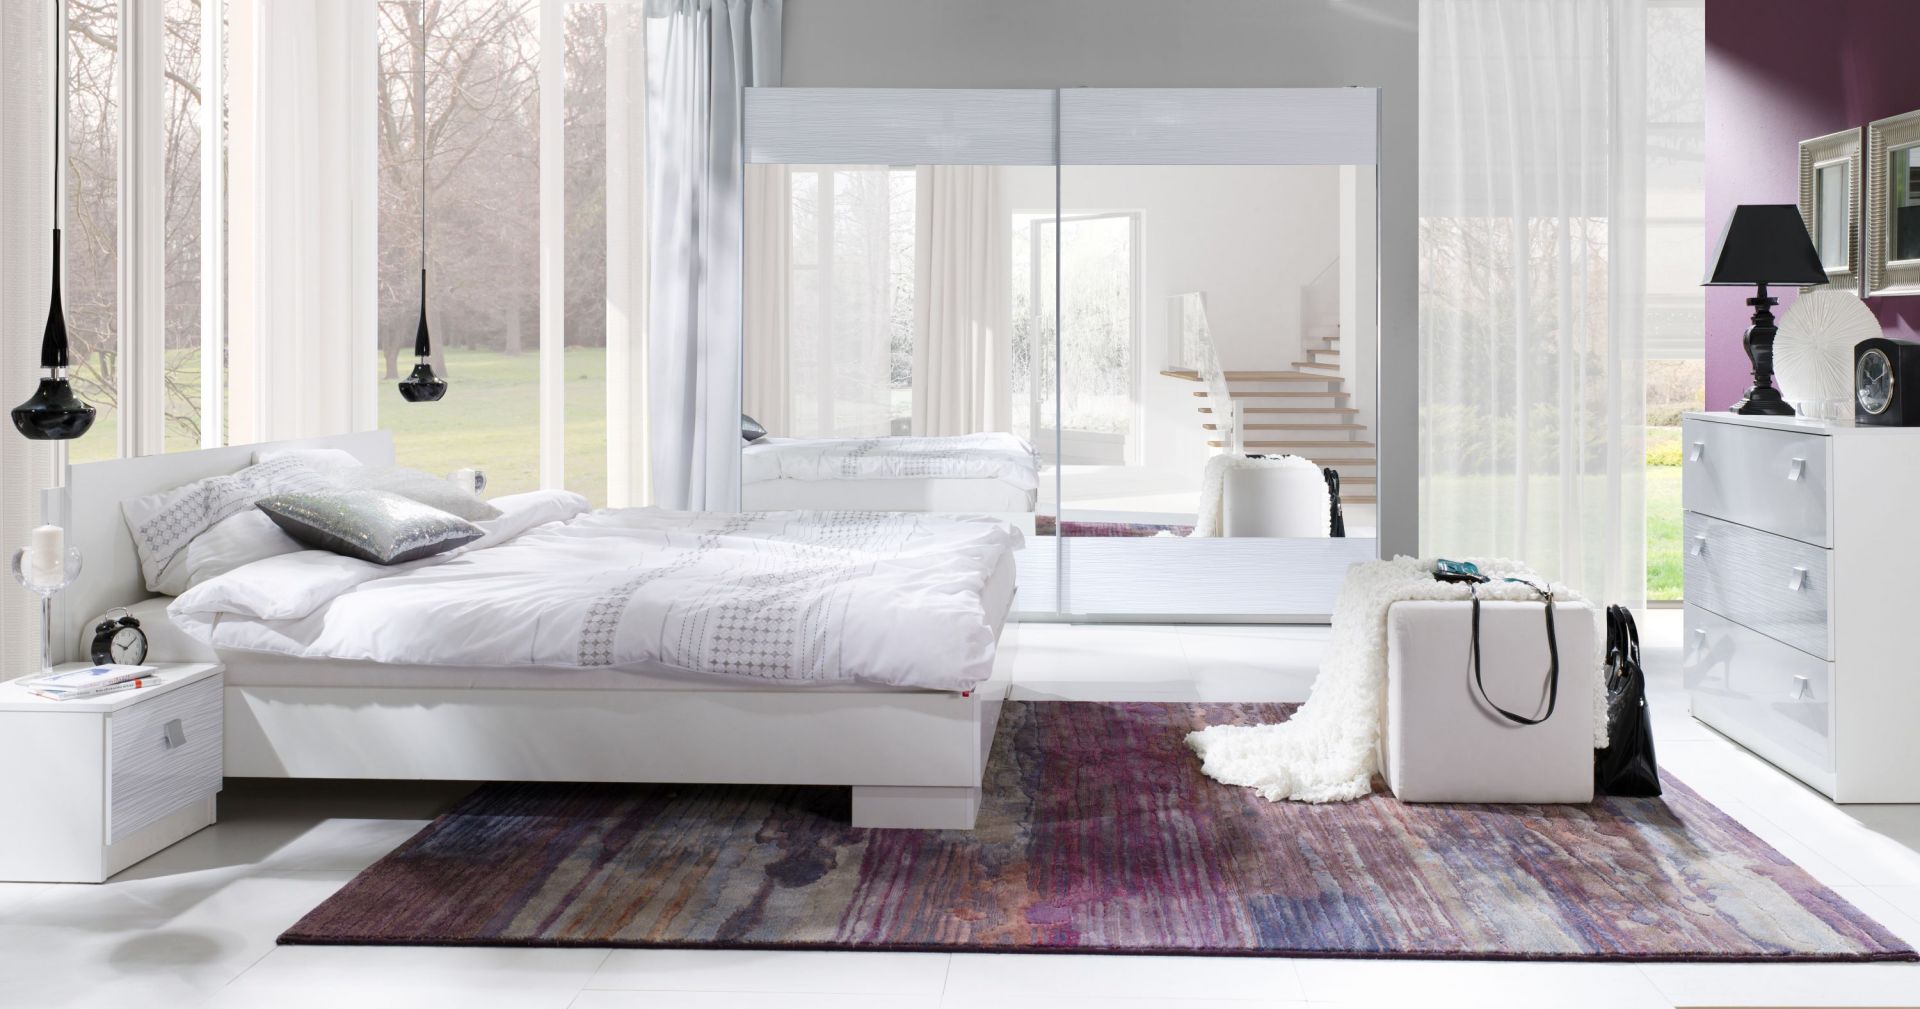 Sypialnia Lux Stripes to meble w wersji total look. Lakierowane powierzchnie brył optycznie powiększą wnętrze sypialni. Fot. Maridex